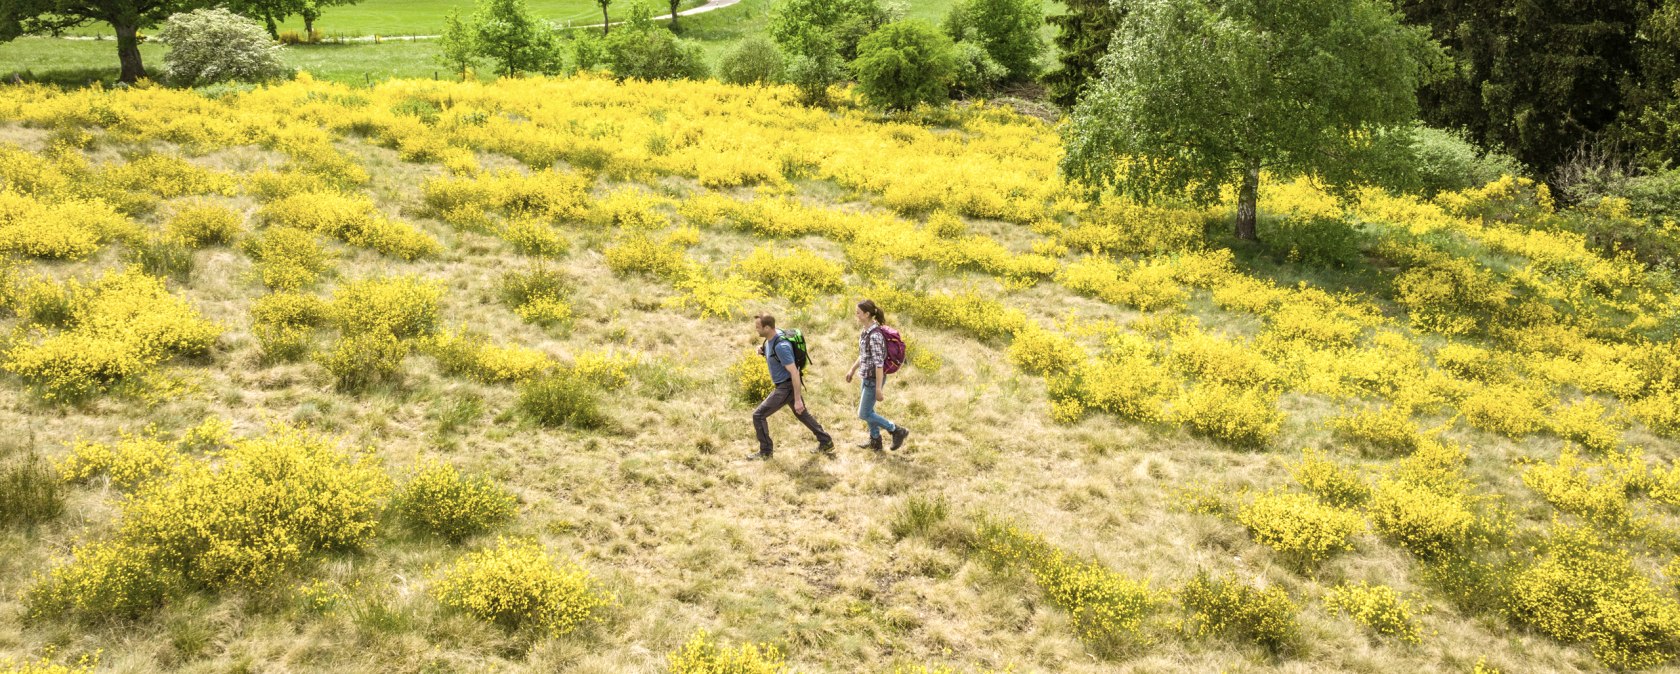 Eifelgold Route, Wandern durch blühenden Ginster, © Eifel Tourismus GmbH, Dominik Ketz